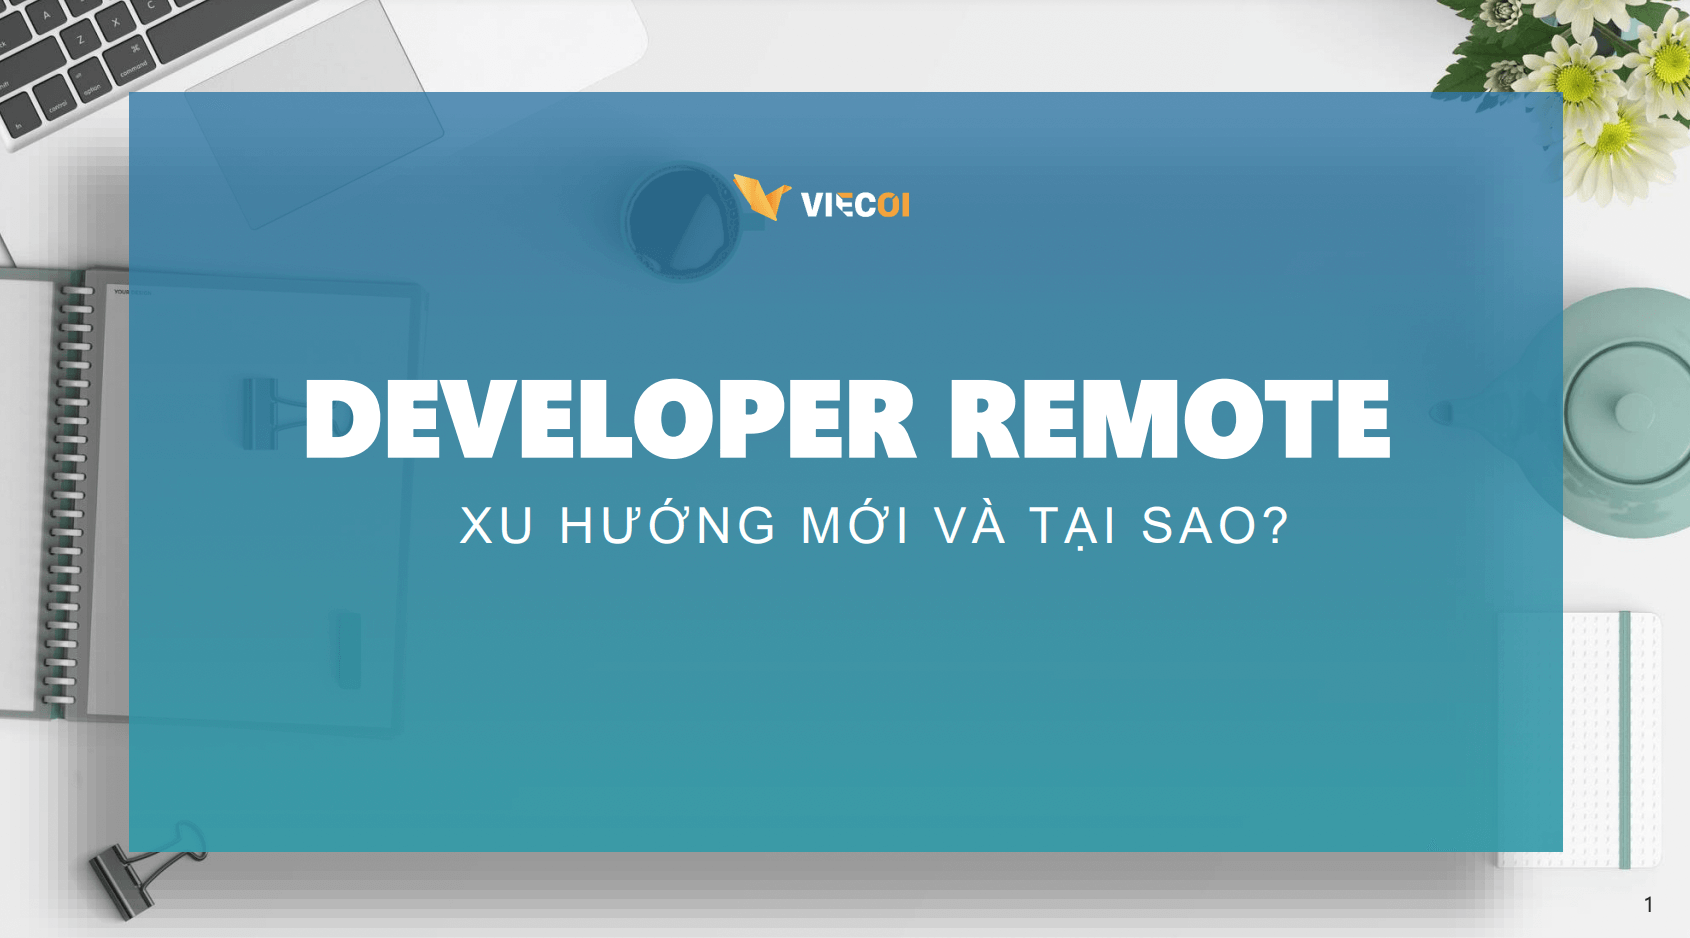 【Ebook】Developer Remote – Xu hướng mới và Tại sao